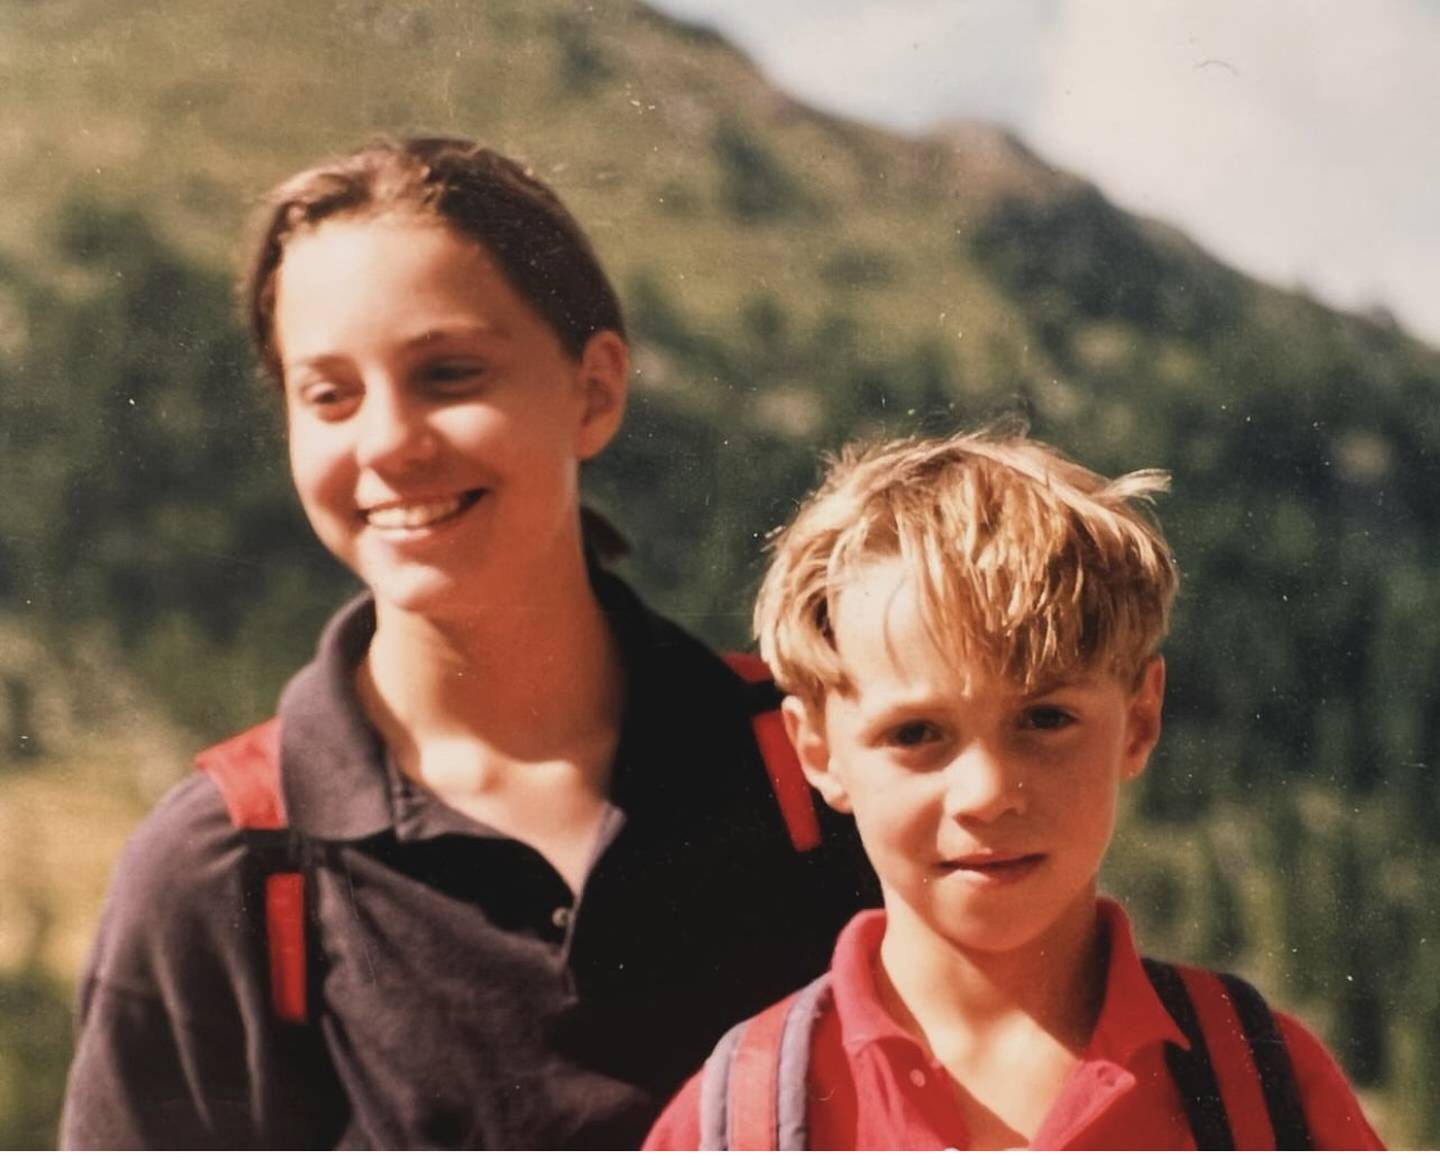 James Middleton compartió esta imagen de cuándo él y su hermana Kate Middleton eran niños. El hombre, de 36 años, le aseguró a su hermana, la princesa de Gales, que la apoyará en todo momento. Foto: Instagram